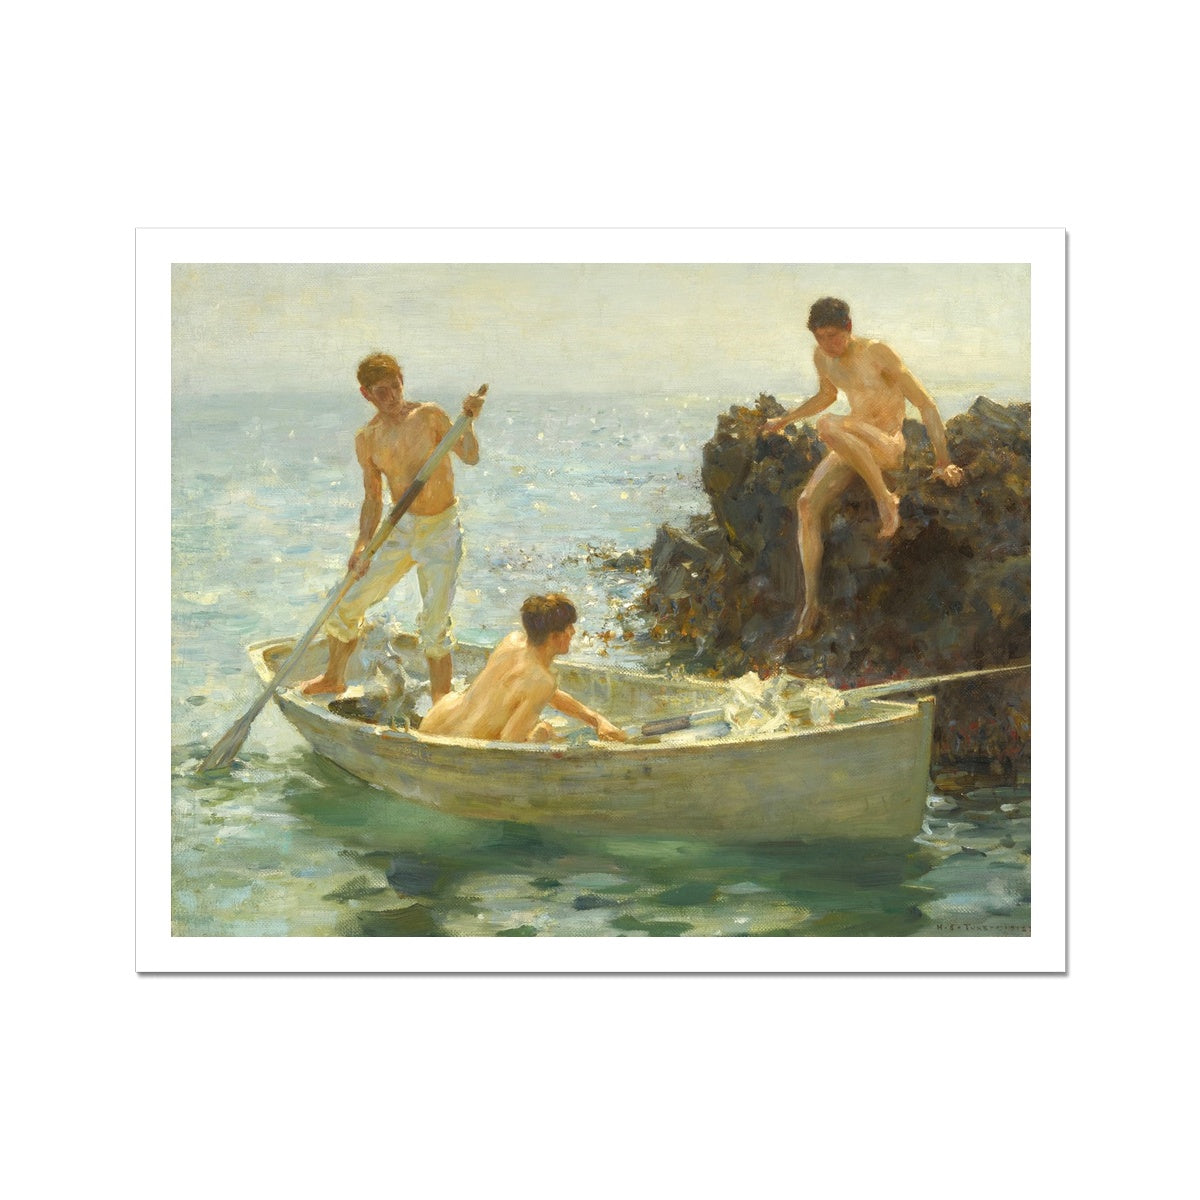 Henry Scott Tuke Open Edition Art Print. The Bathing Cove. Art Gallery Historic Art